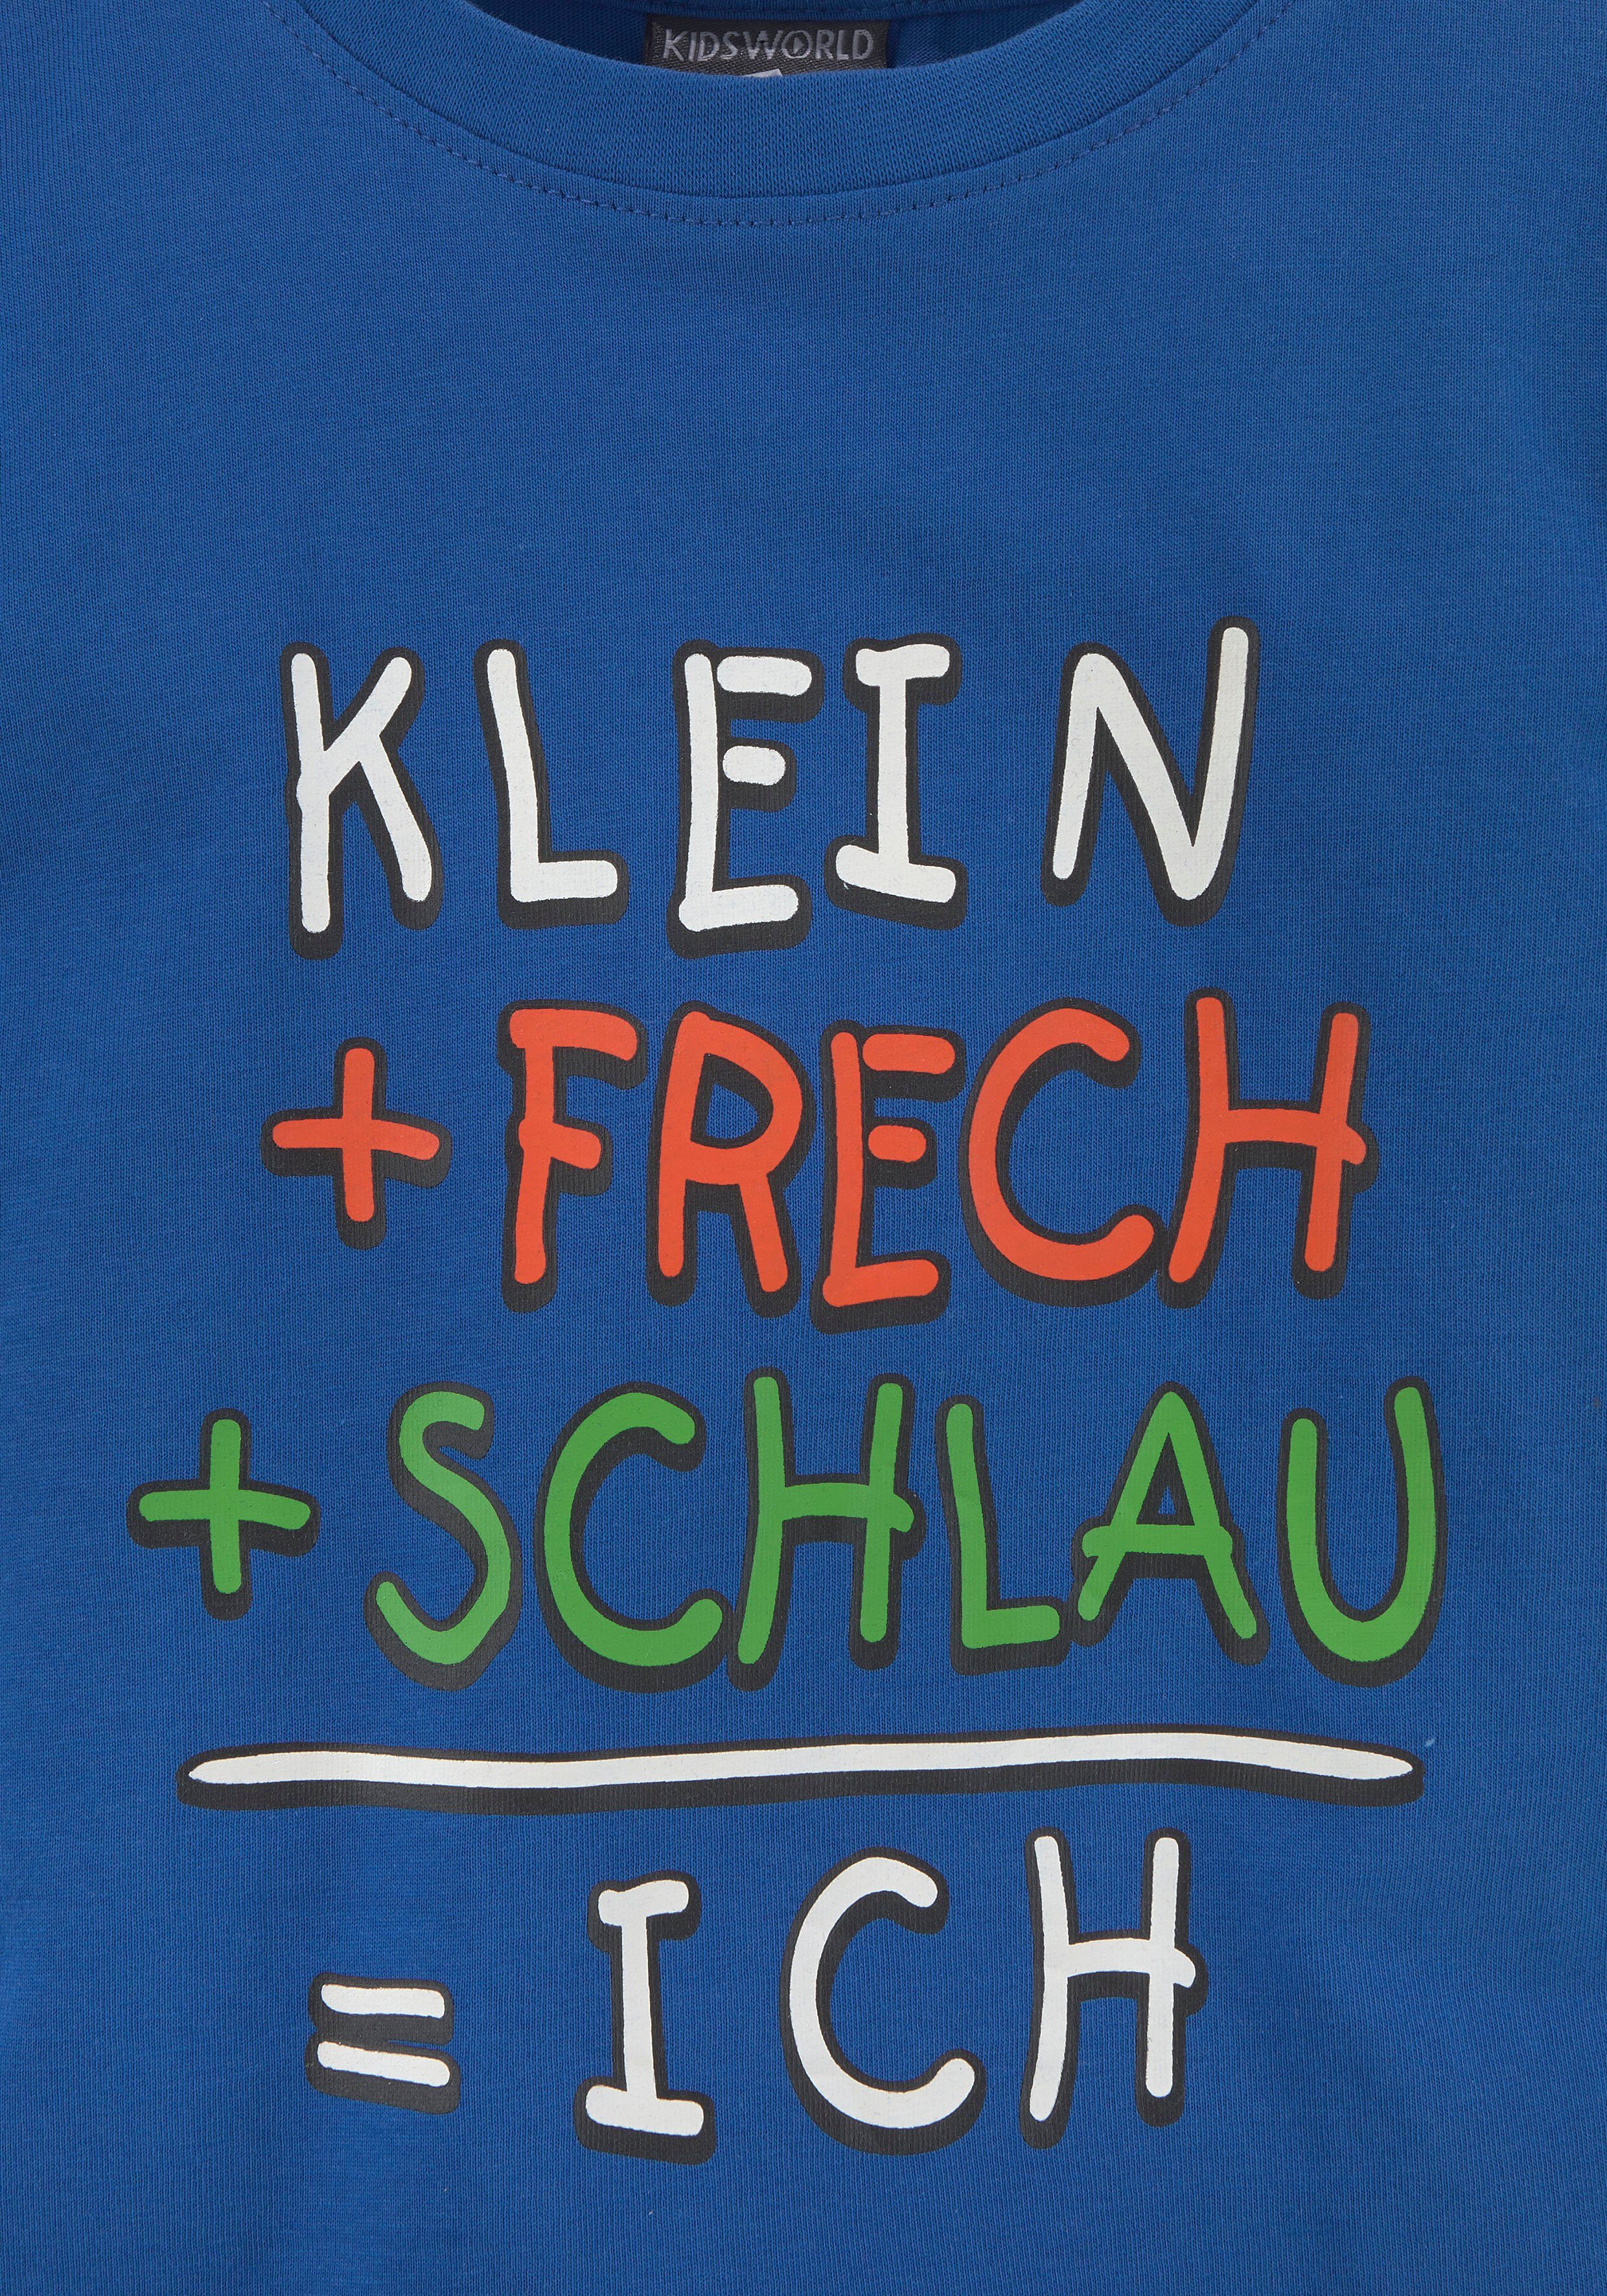 T-Shirt KLEIN+FRECH+SCHLAU... KIDSWORLD